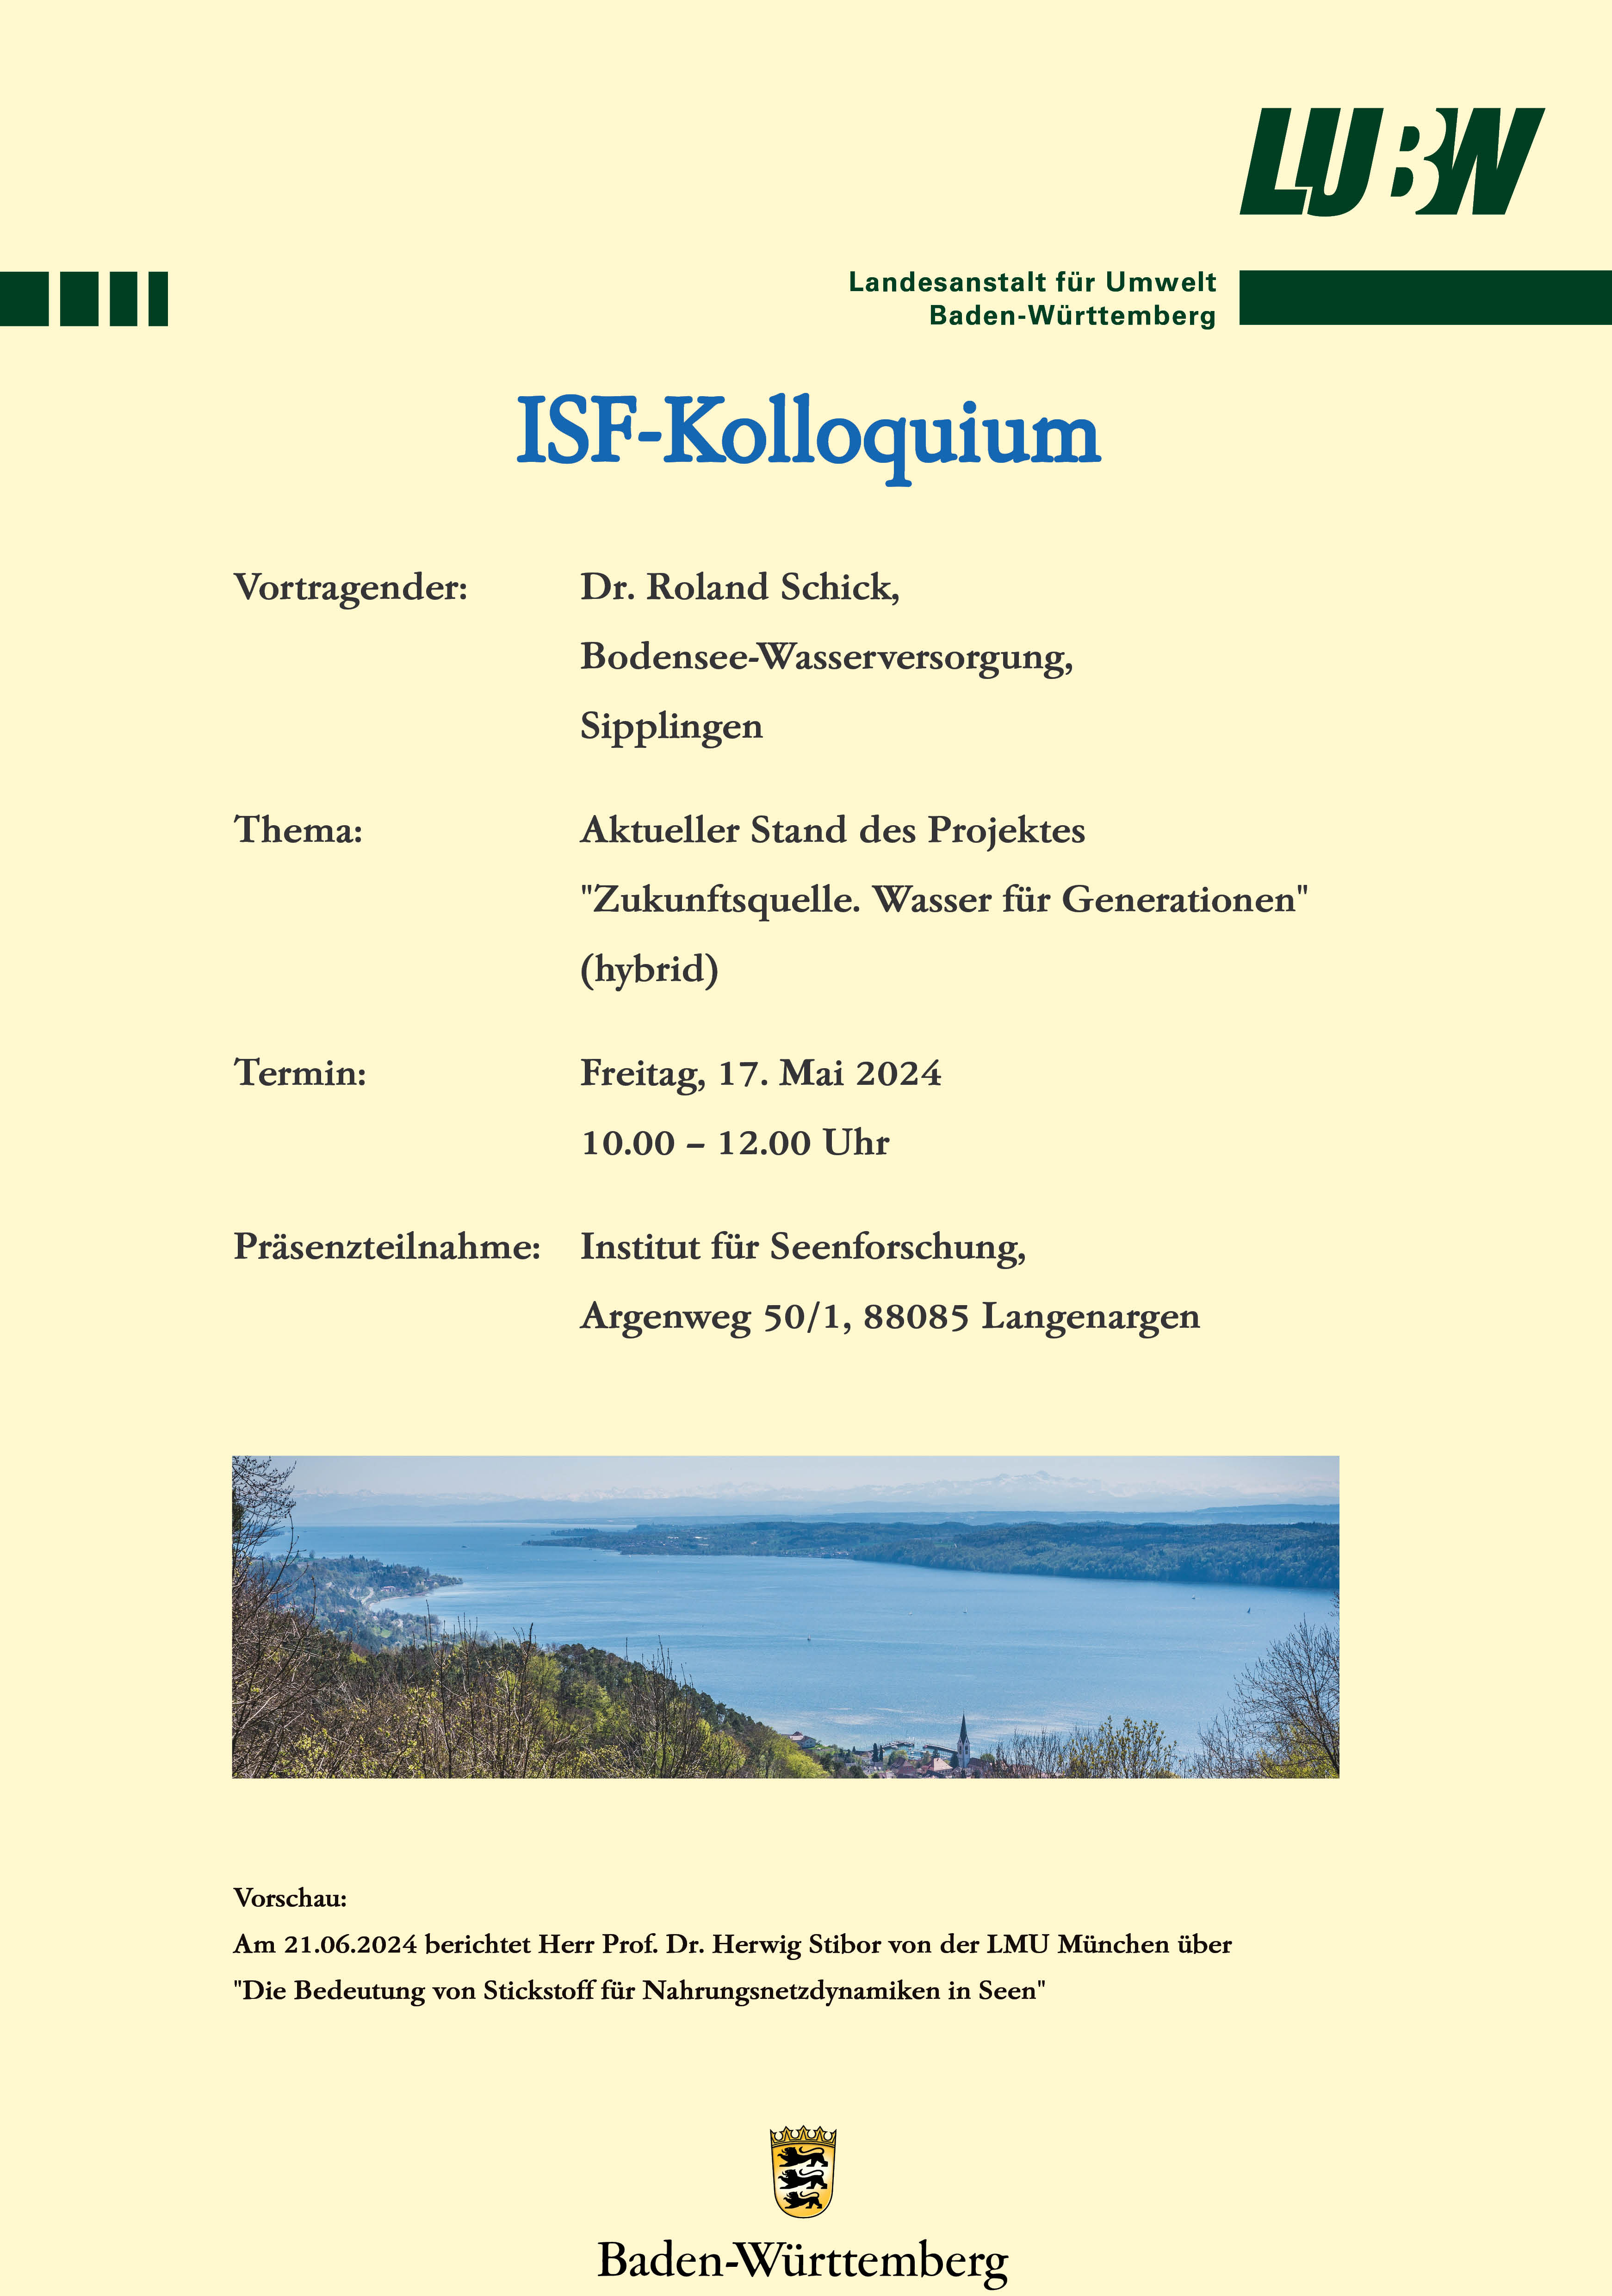  Kolloquiumsankündigung vom 17.05.2024 zum Thema "Zukunftsquelle. Wasser für Generationen" mit Dr. Roland Schick von der Bodensee-Wasserversorgung in Sipplingen